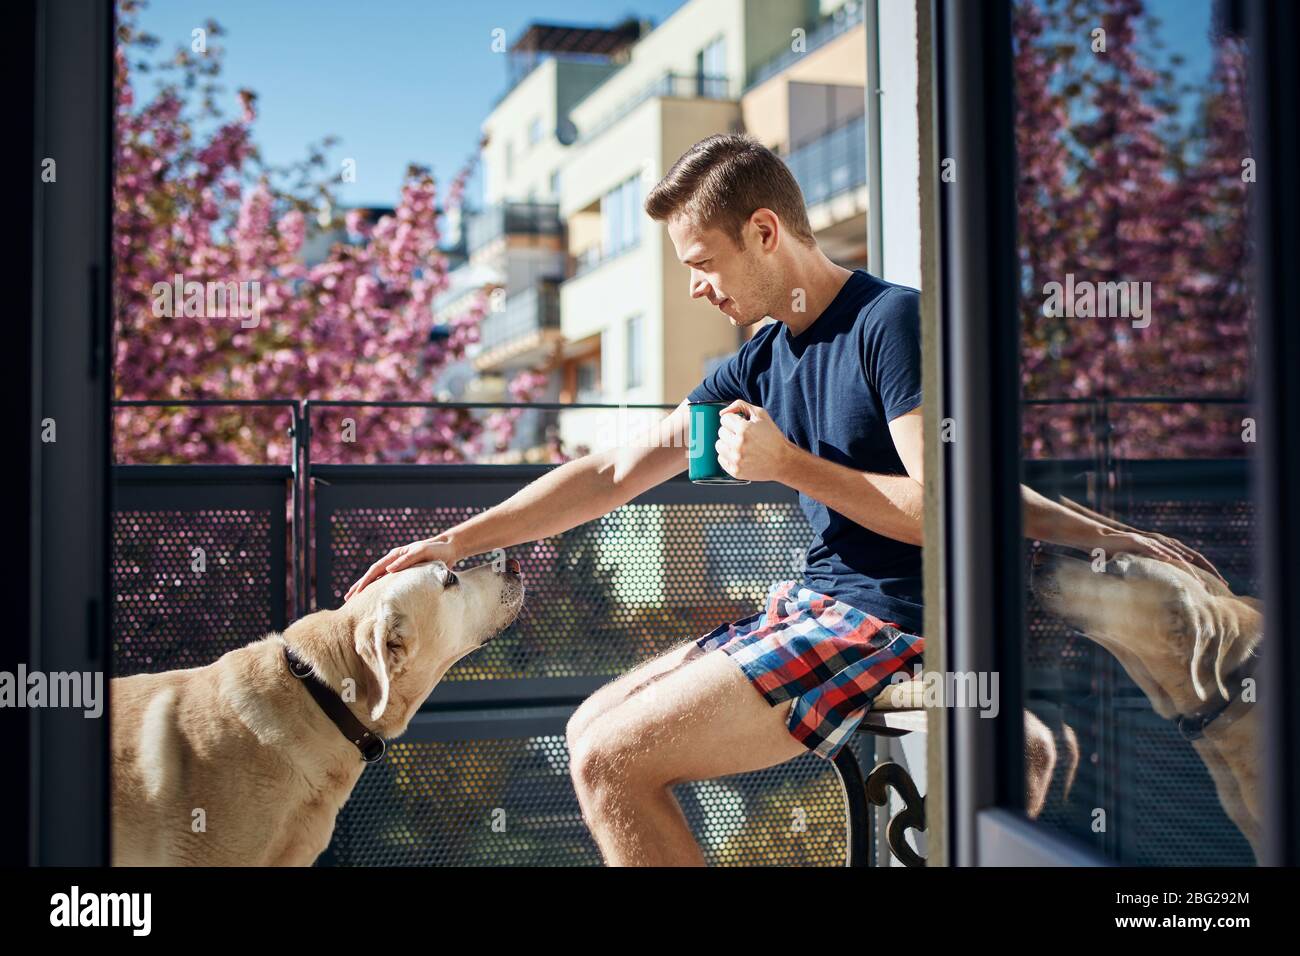 Spring morning at home. Young man stroking his labrador retriever on balcony. Stock Photo